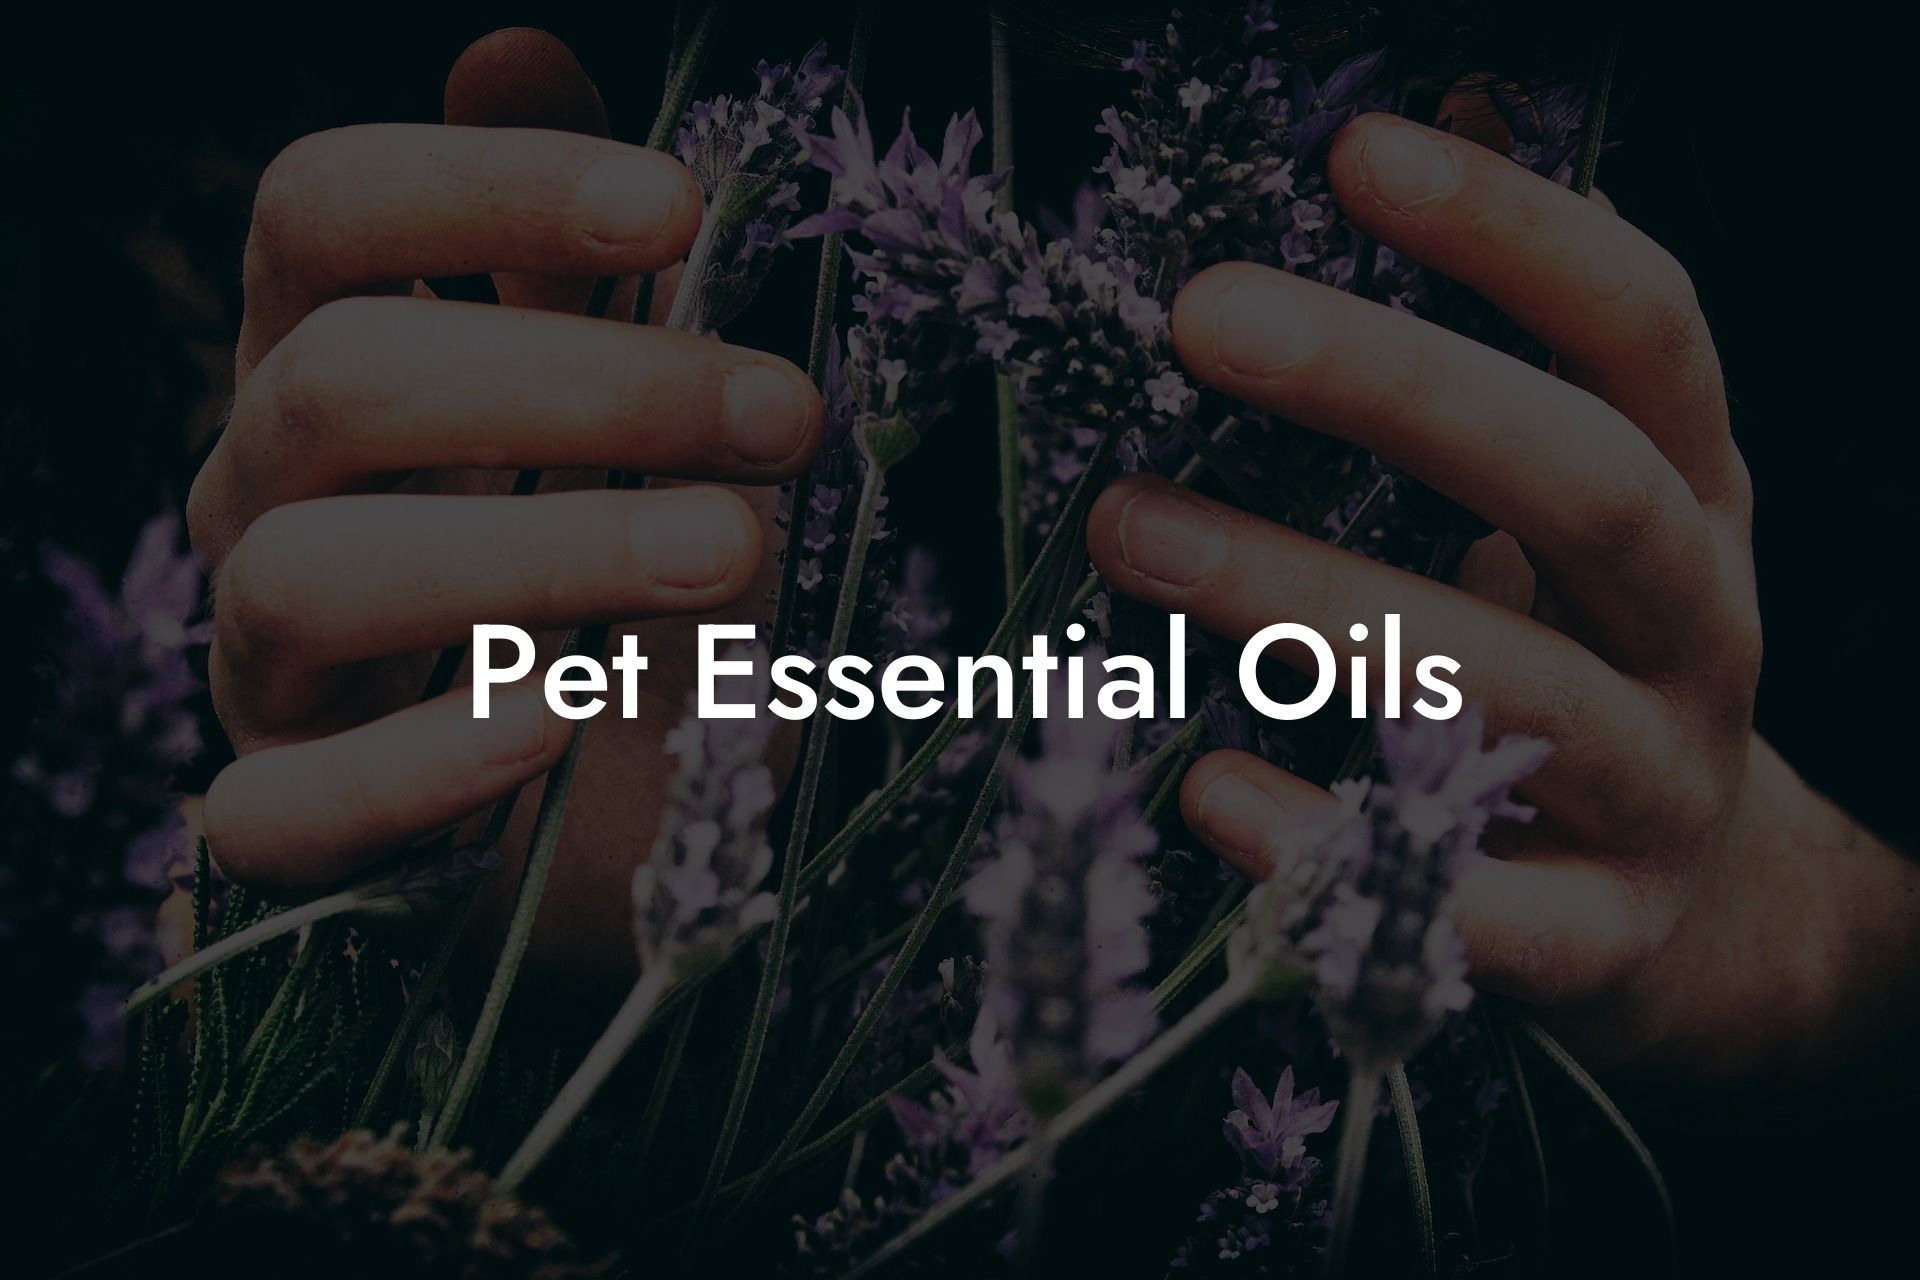 Pet Essential Oils